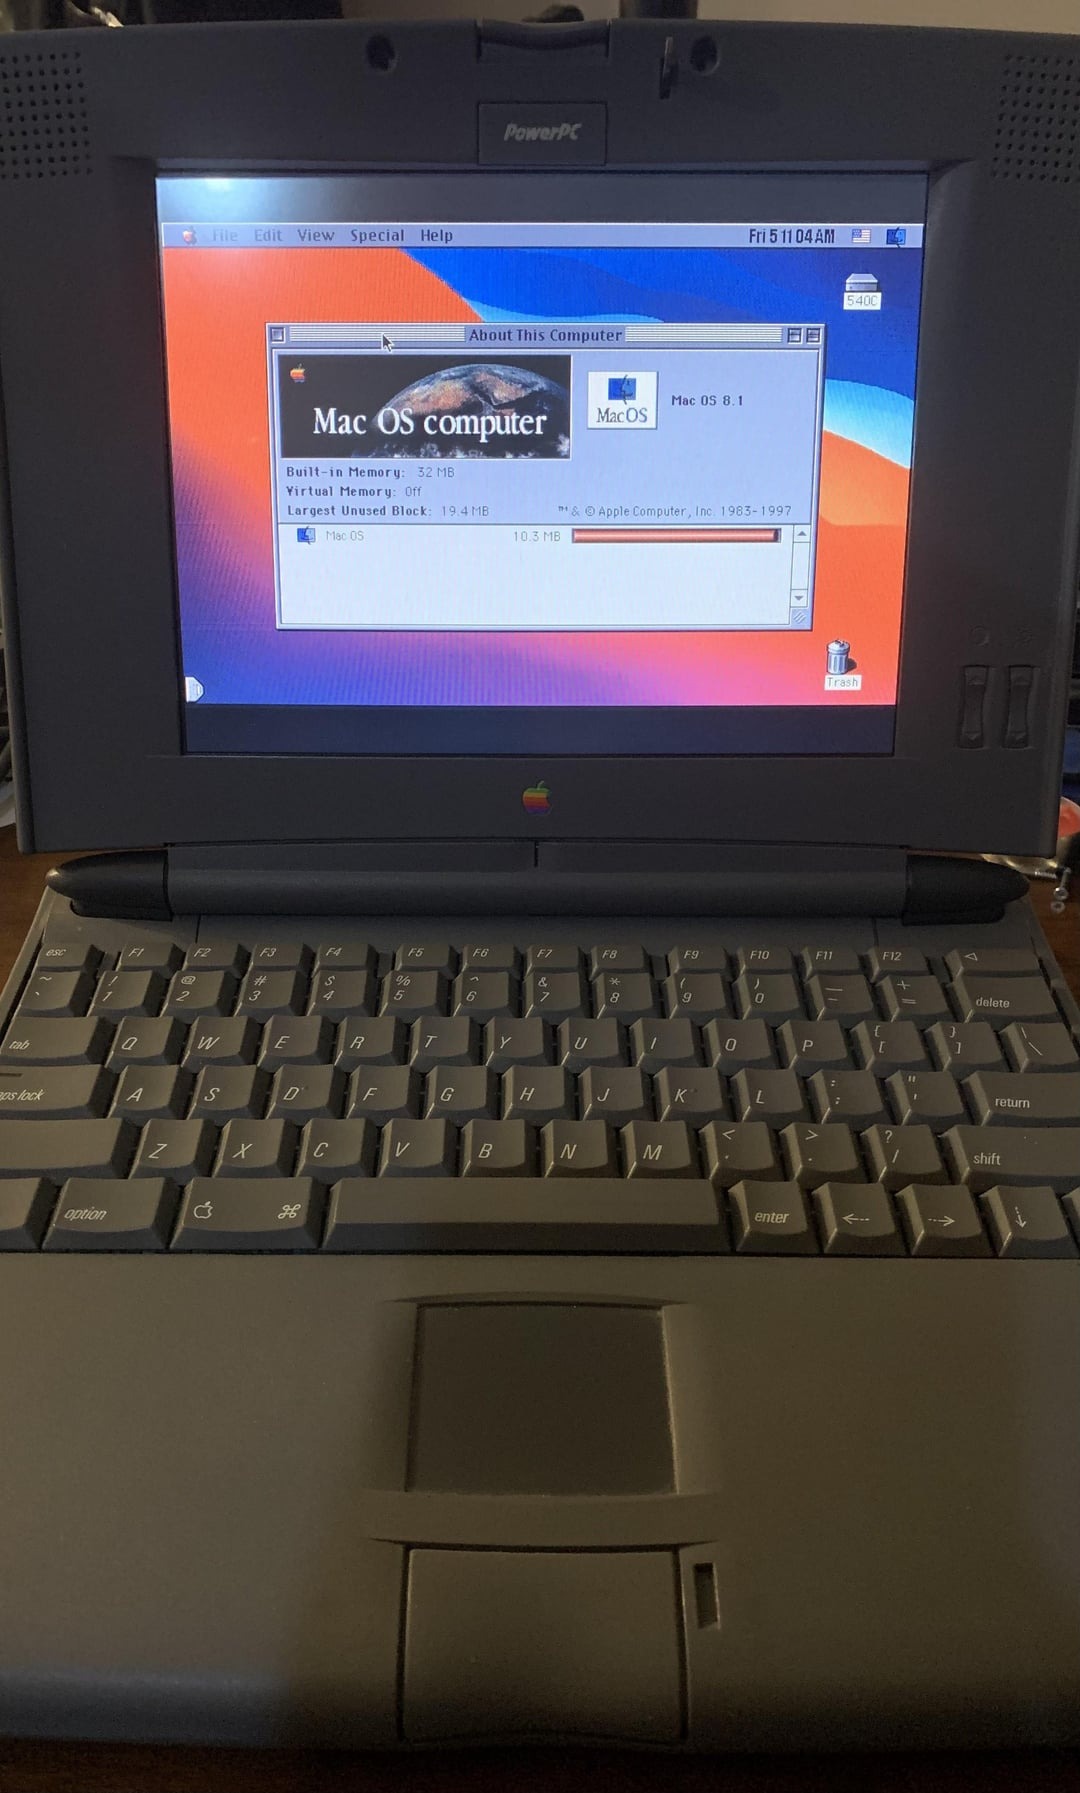 powerbook 540c ppc 8.1 with big sur desktop